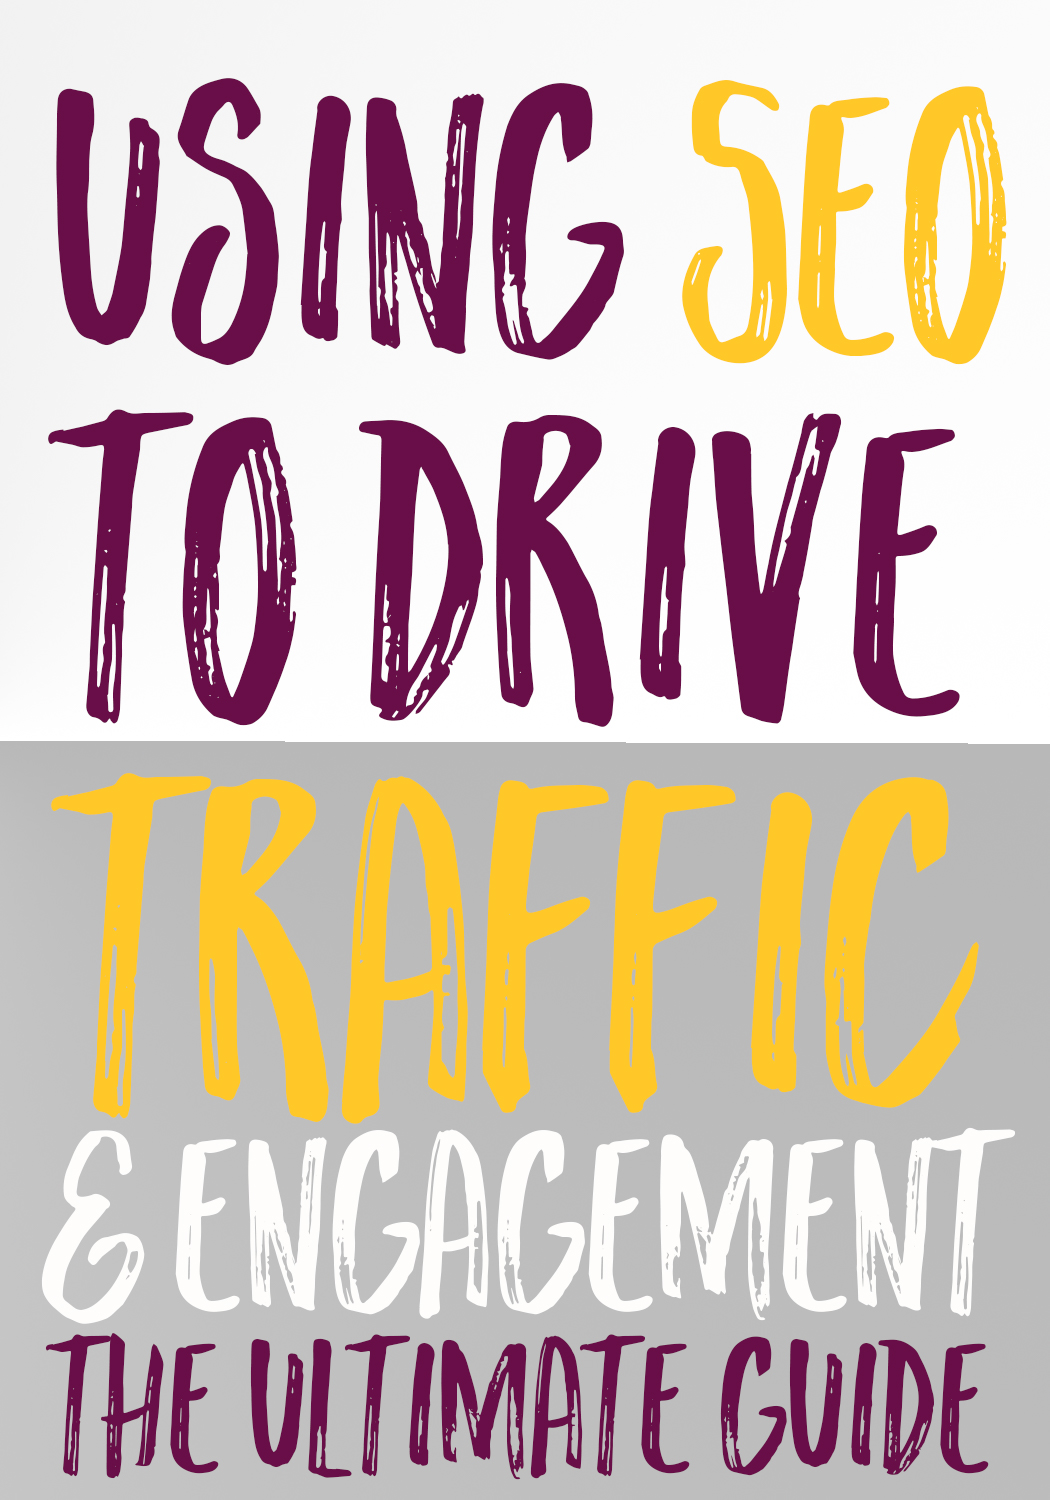 SEO drive traffic engagement